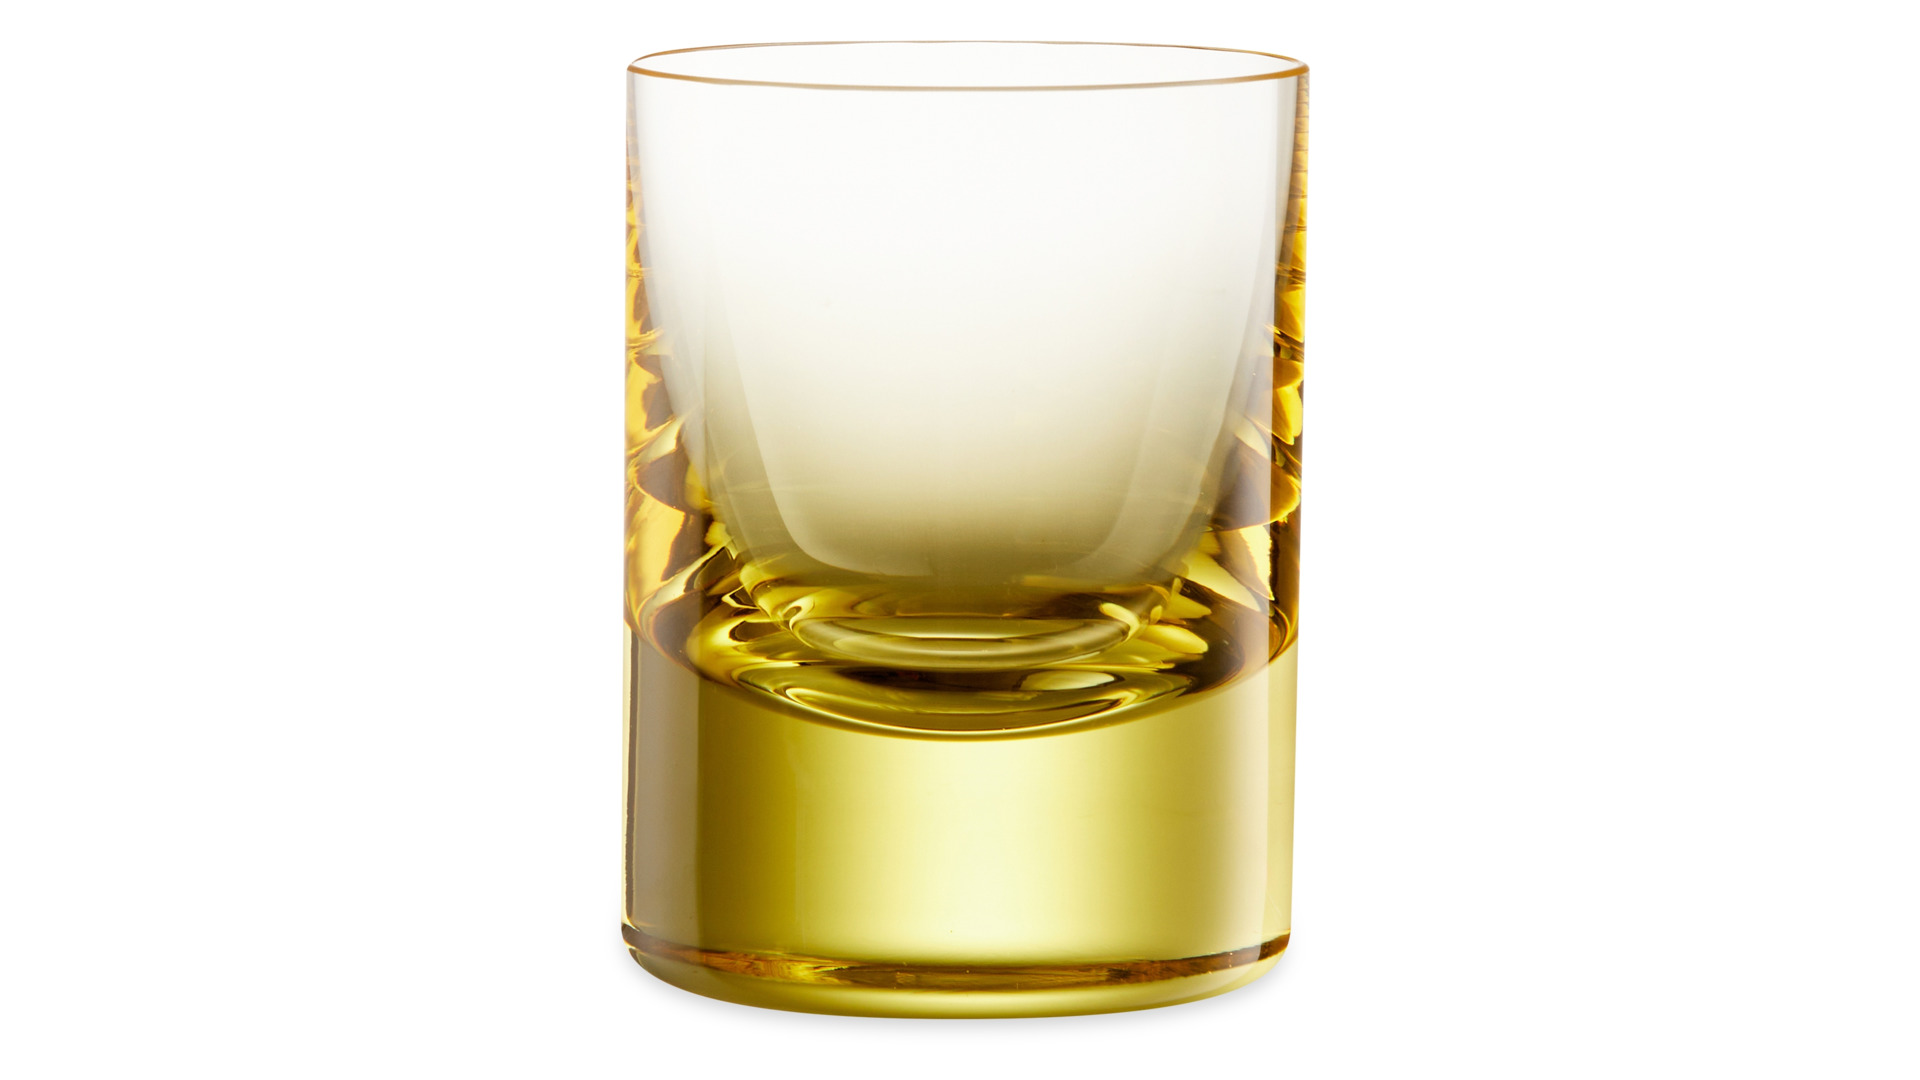 Набор стопок для водки Moser Виски сет 60 мл, 2 шт, желтый, п/к